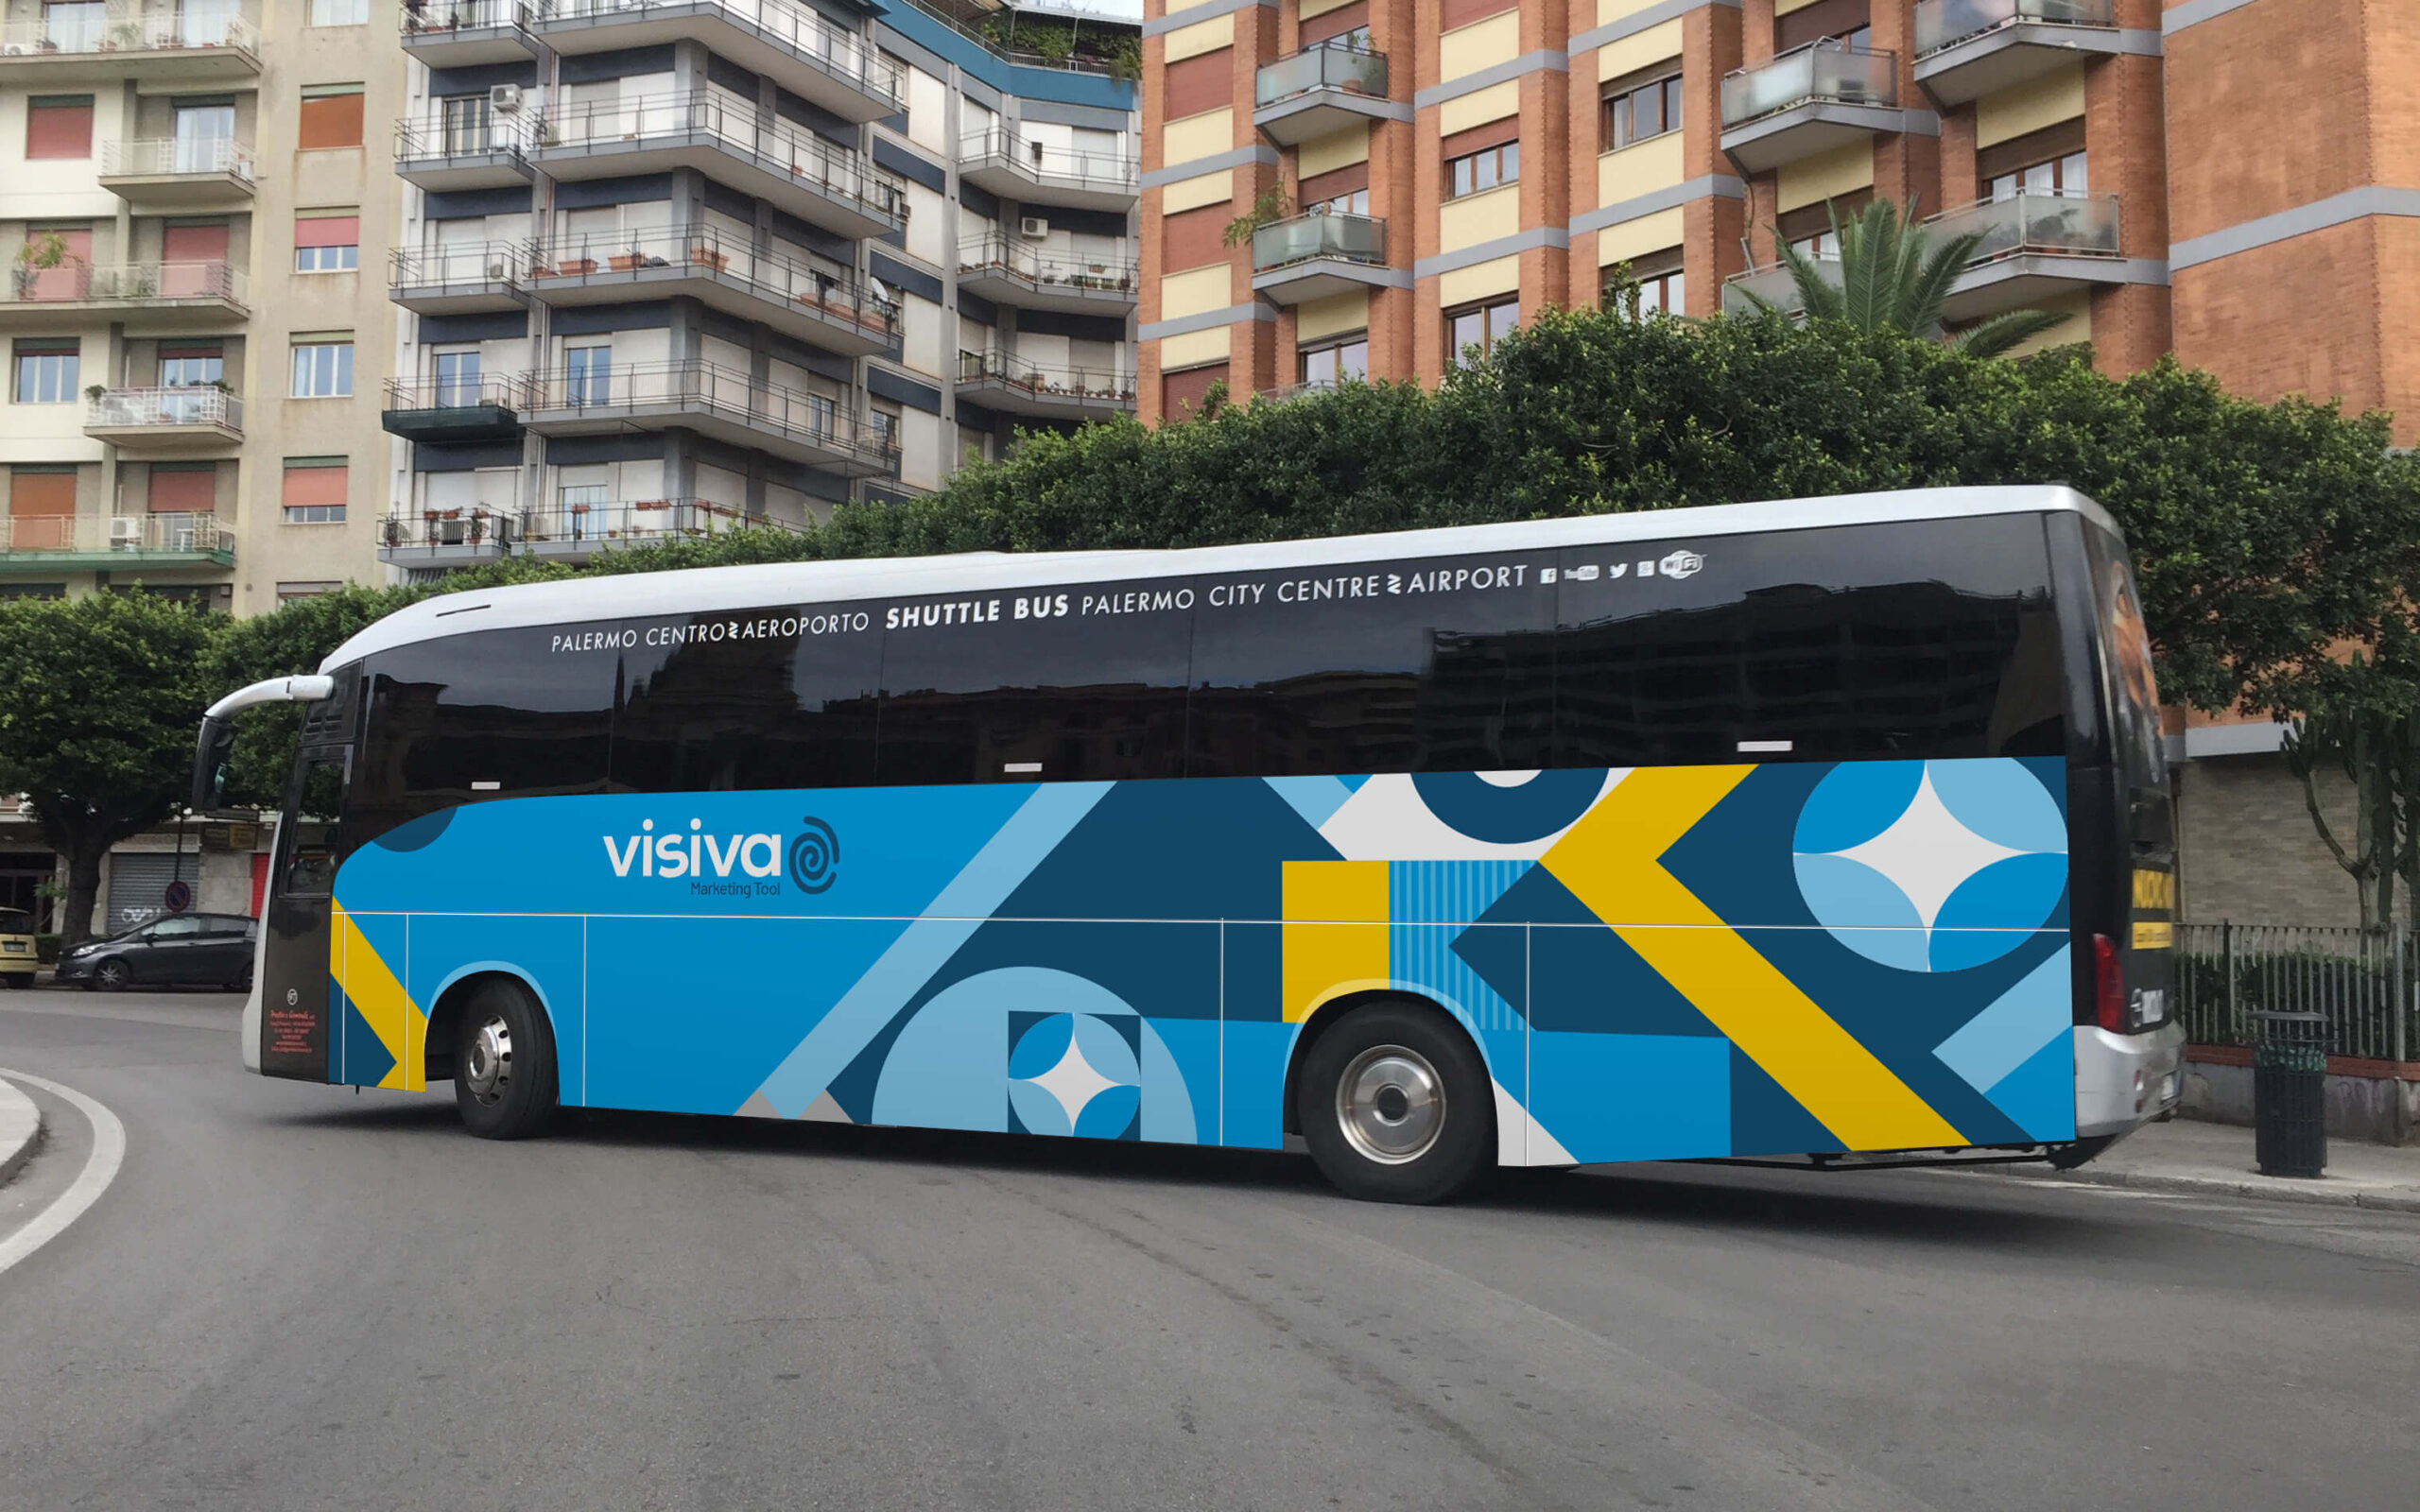 Bus_Parziale